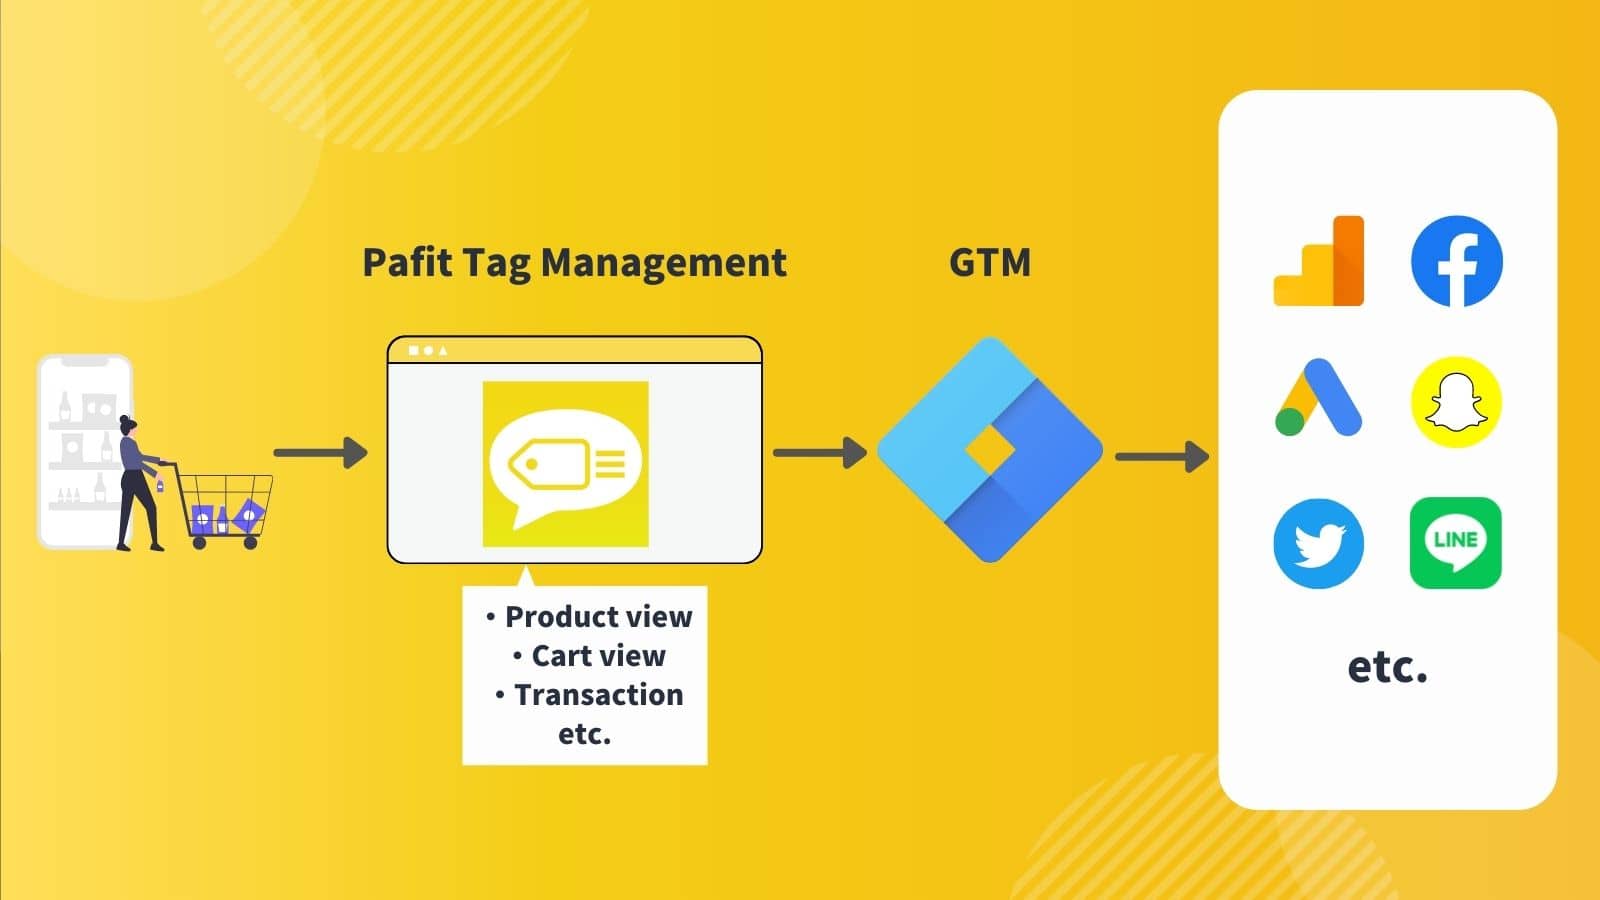 Visão geral do Pafit Tag Management para GTM